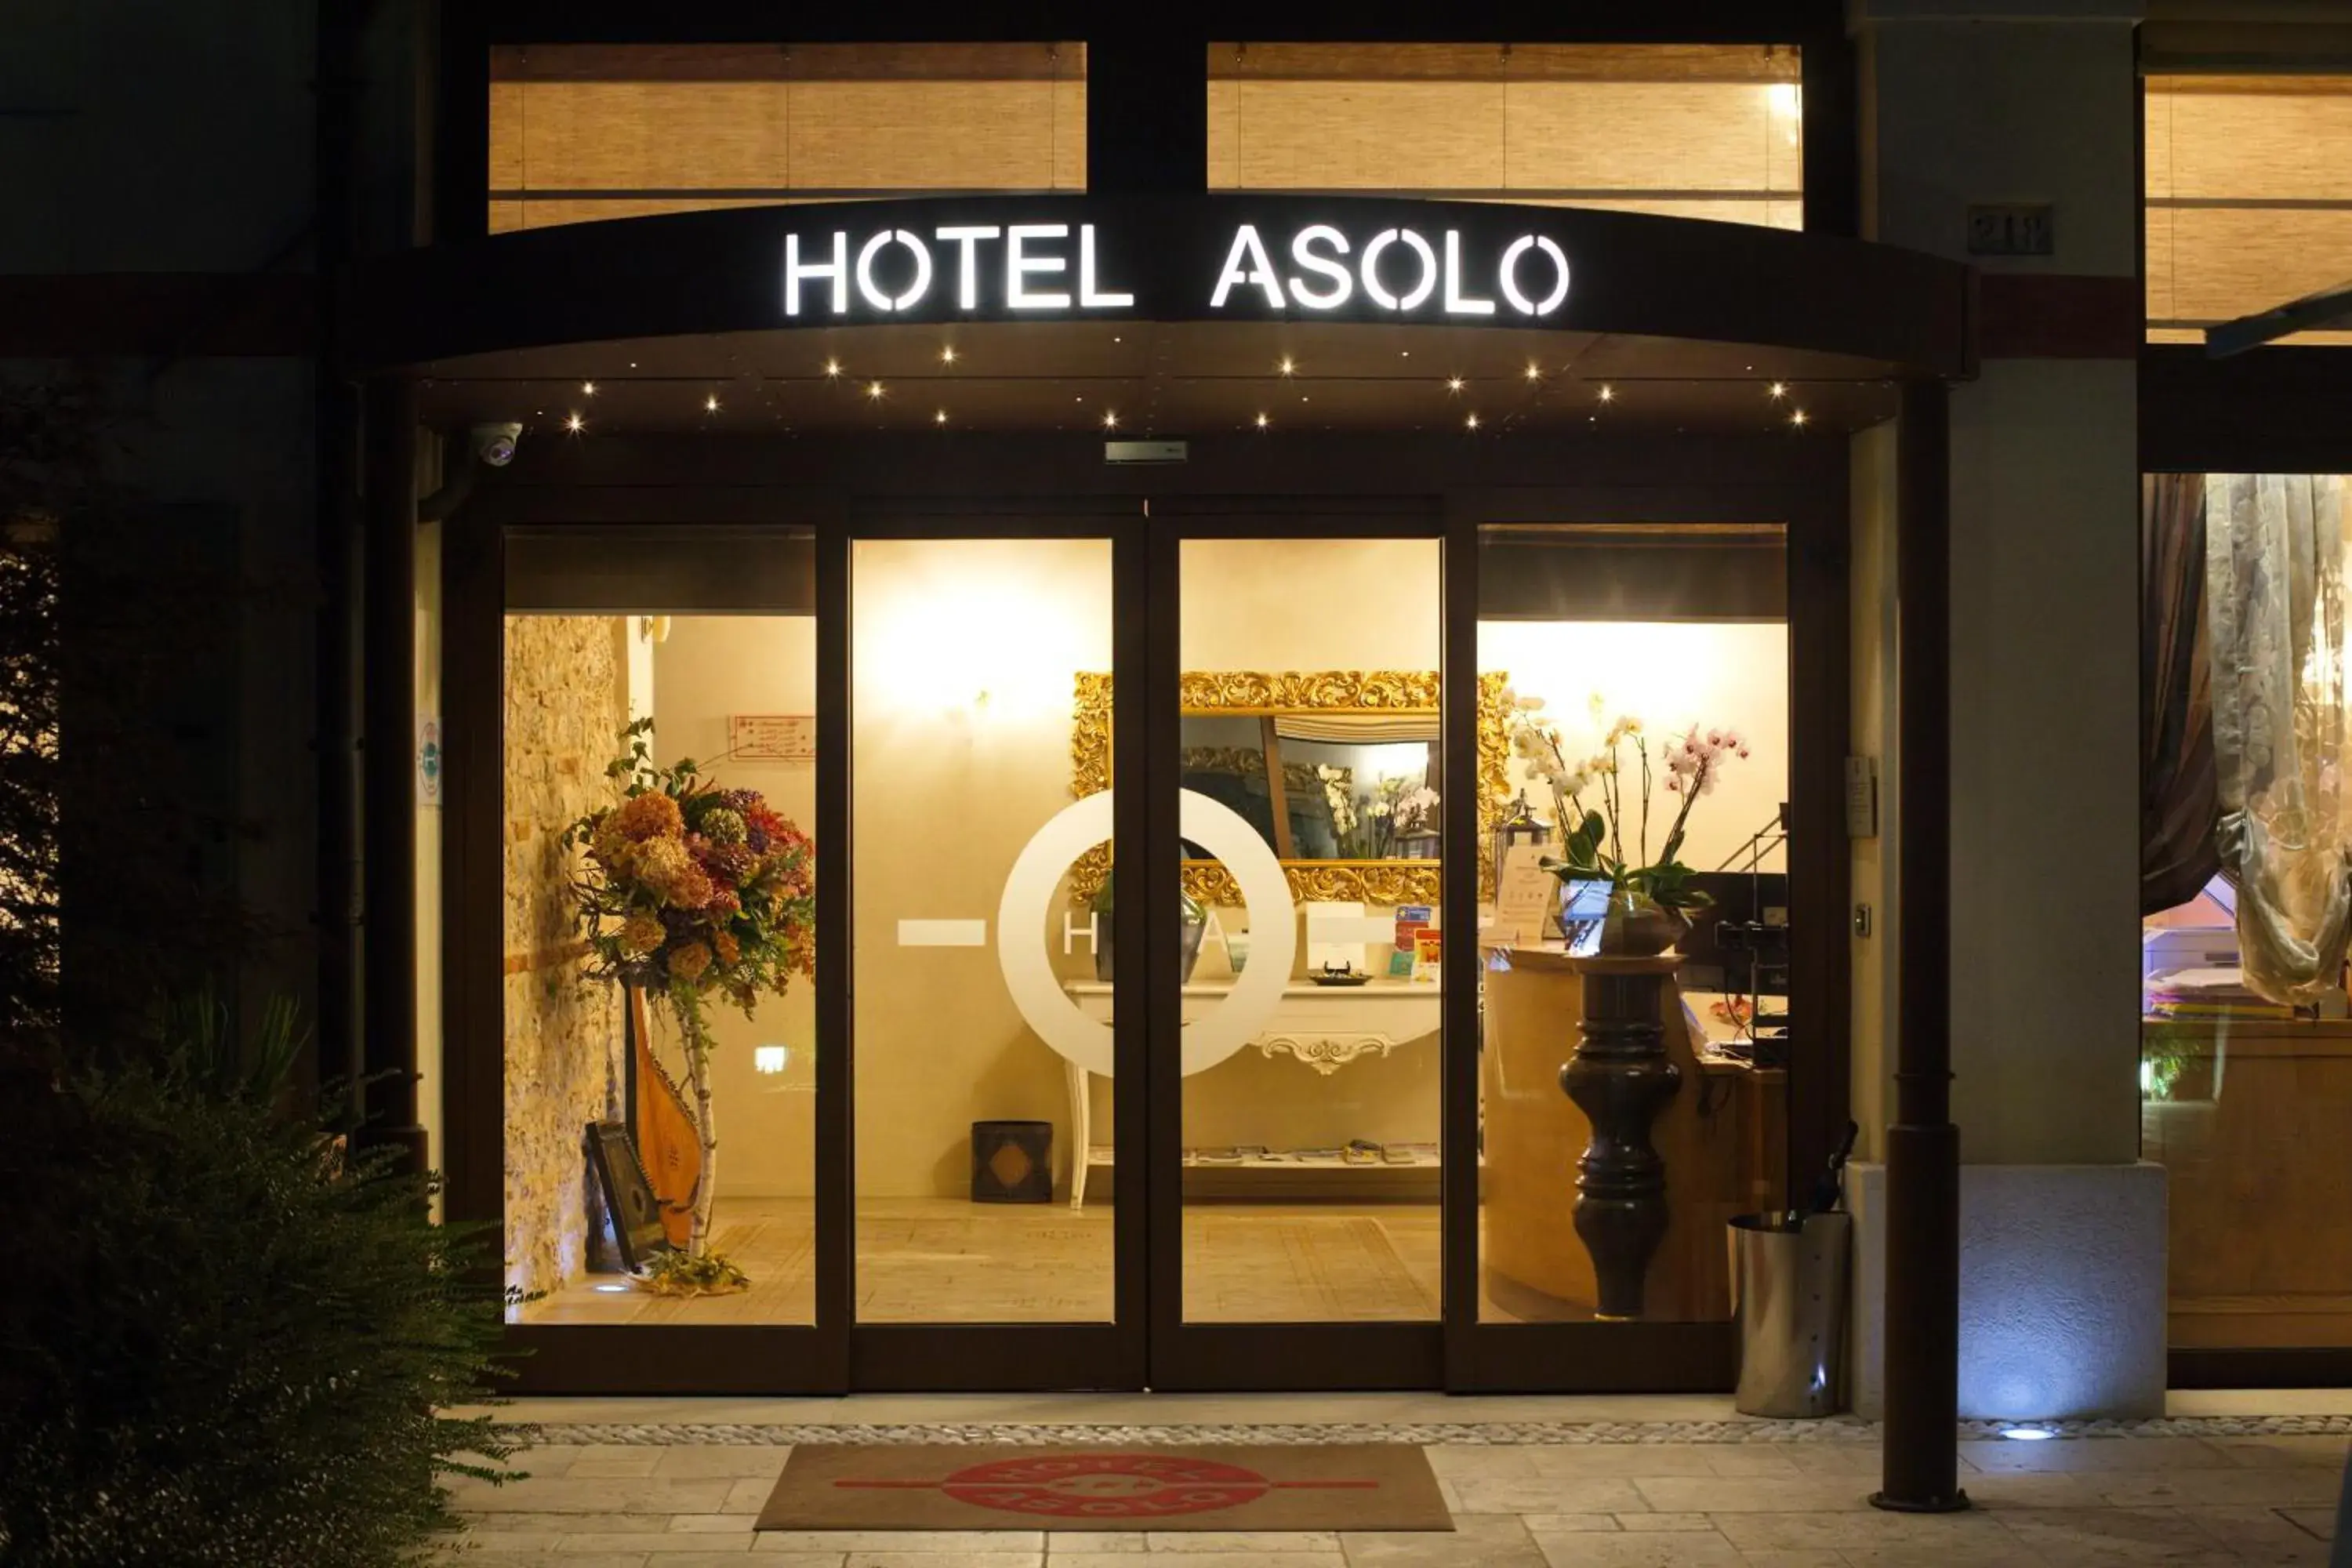 Facade/entrance in Hotel Asolo